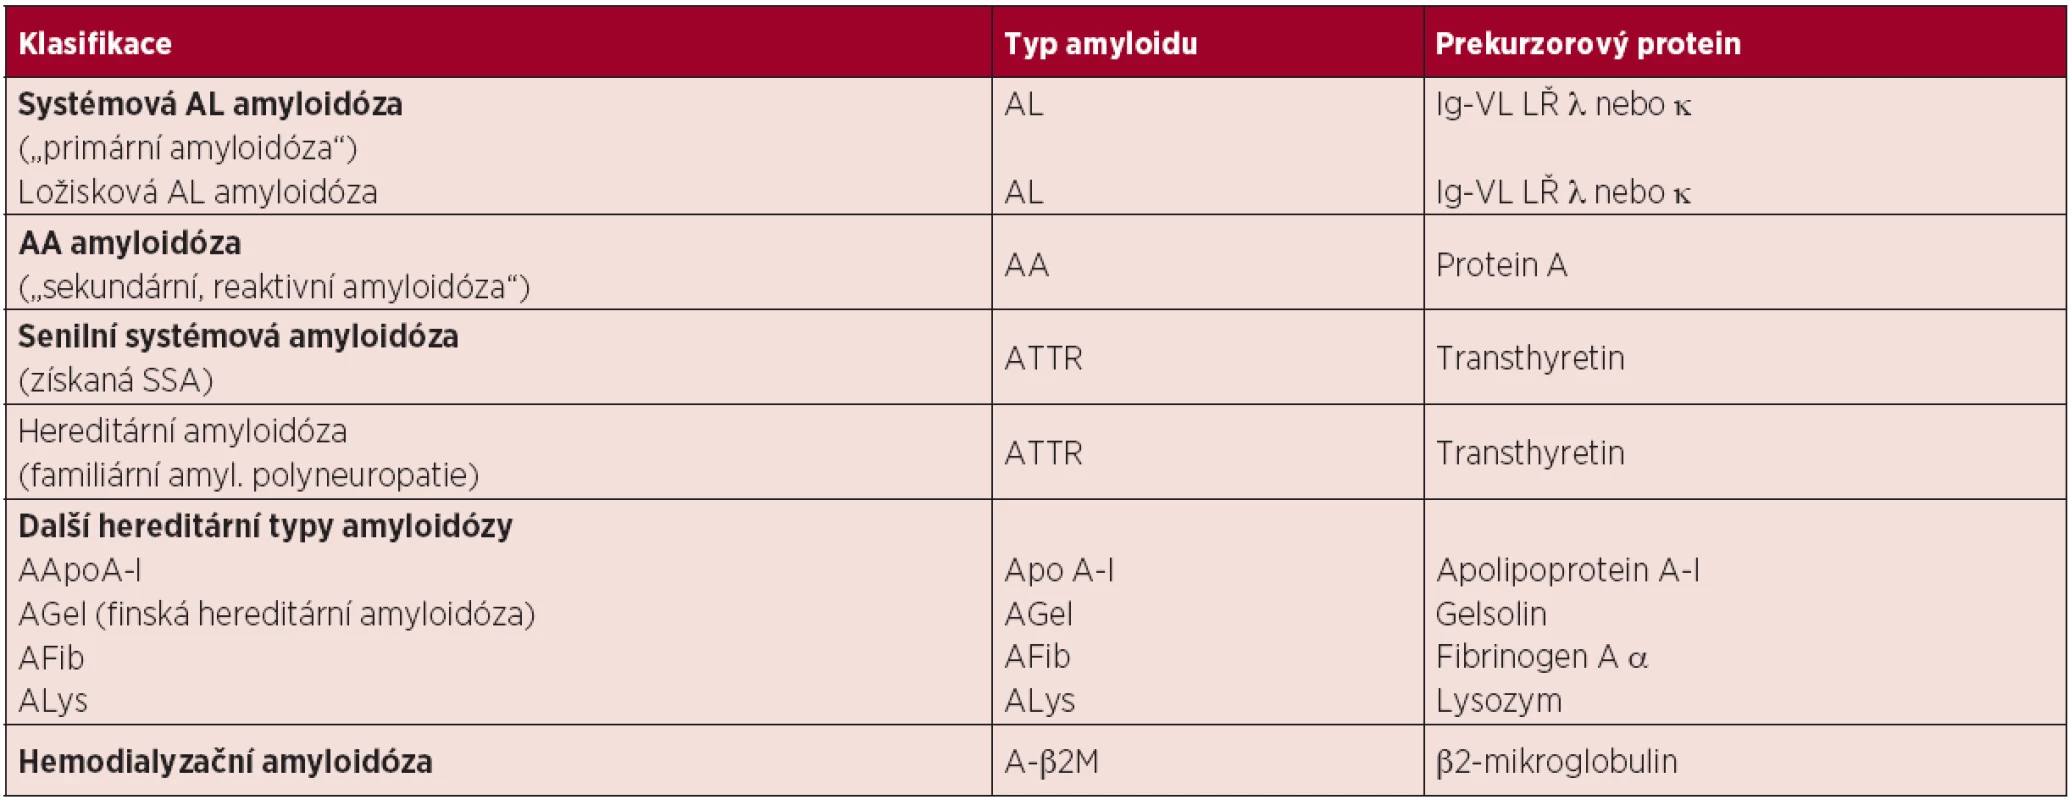 Zjednodušená klasifikace nejčastějších typů amyloidóz <em>(Kyle, 1995; Hassan, 2005)</em>